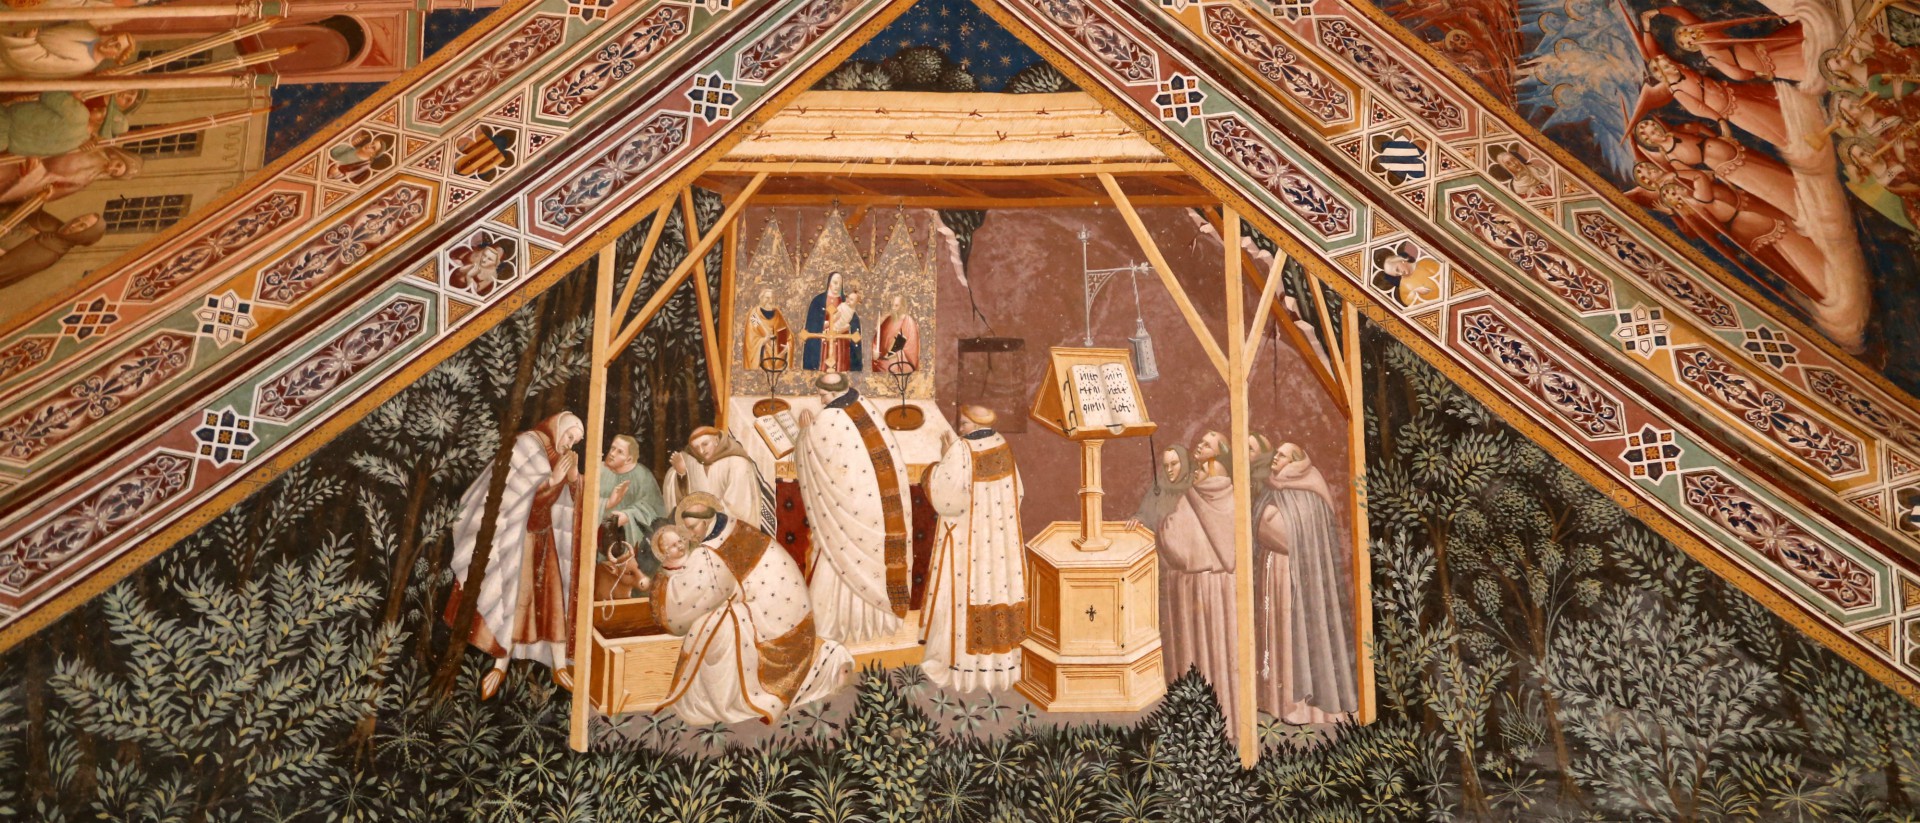 Le 1er décembre 2019, le pape François s'est rendu à Greccio, où saint François d'Assise a construit la première crèche. Ici, celle de Greccio peinte par le peintre Antonio Vite, vers 1390-1400 | © Sailko wikimedia commons 